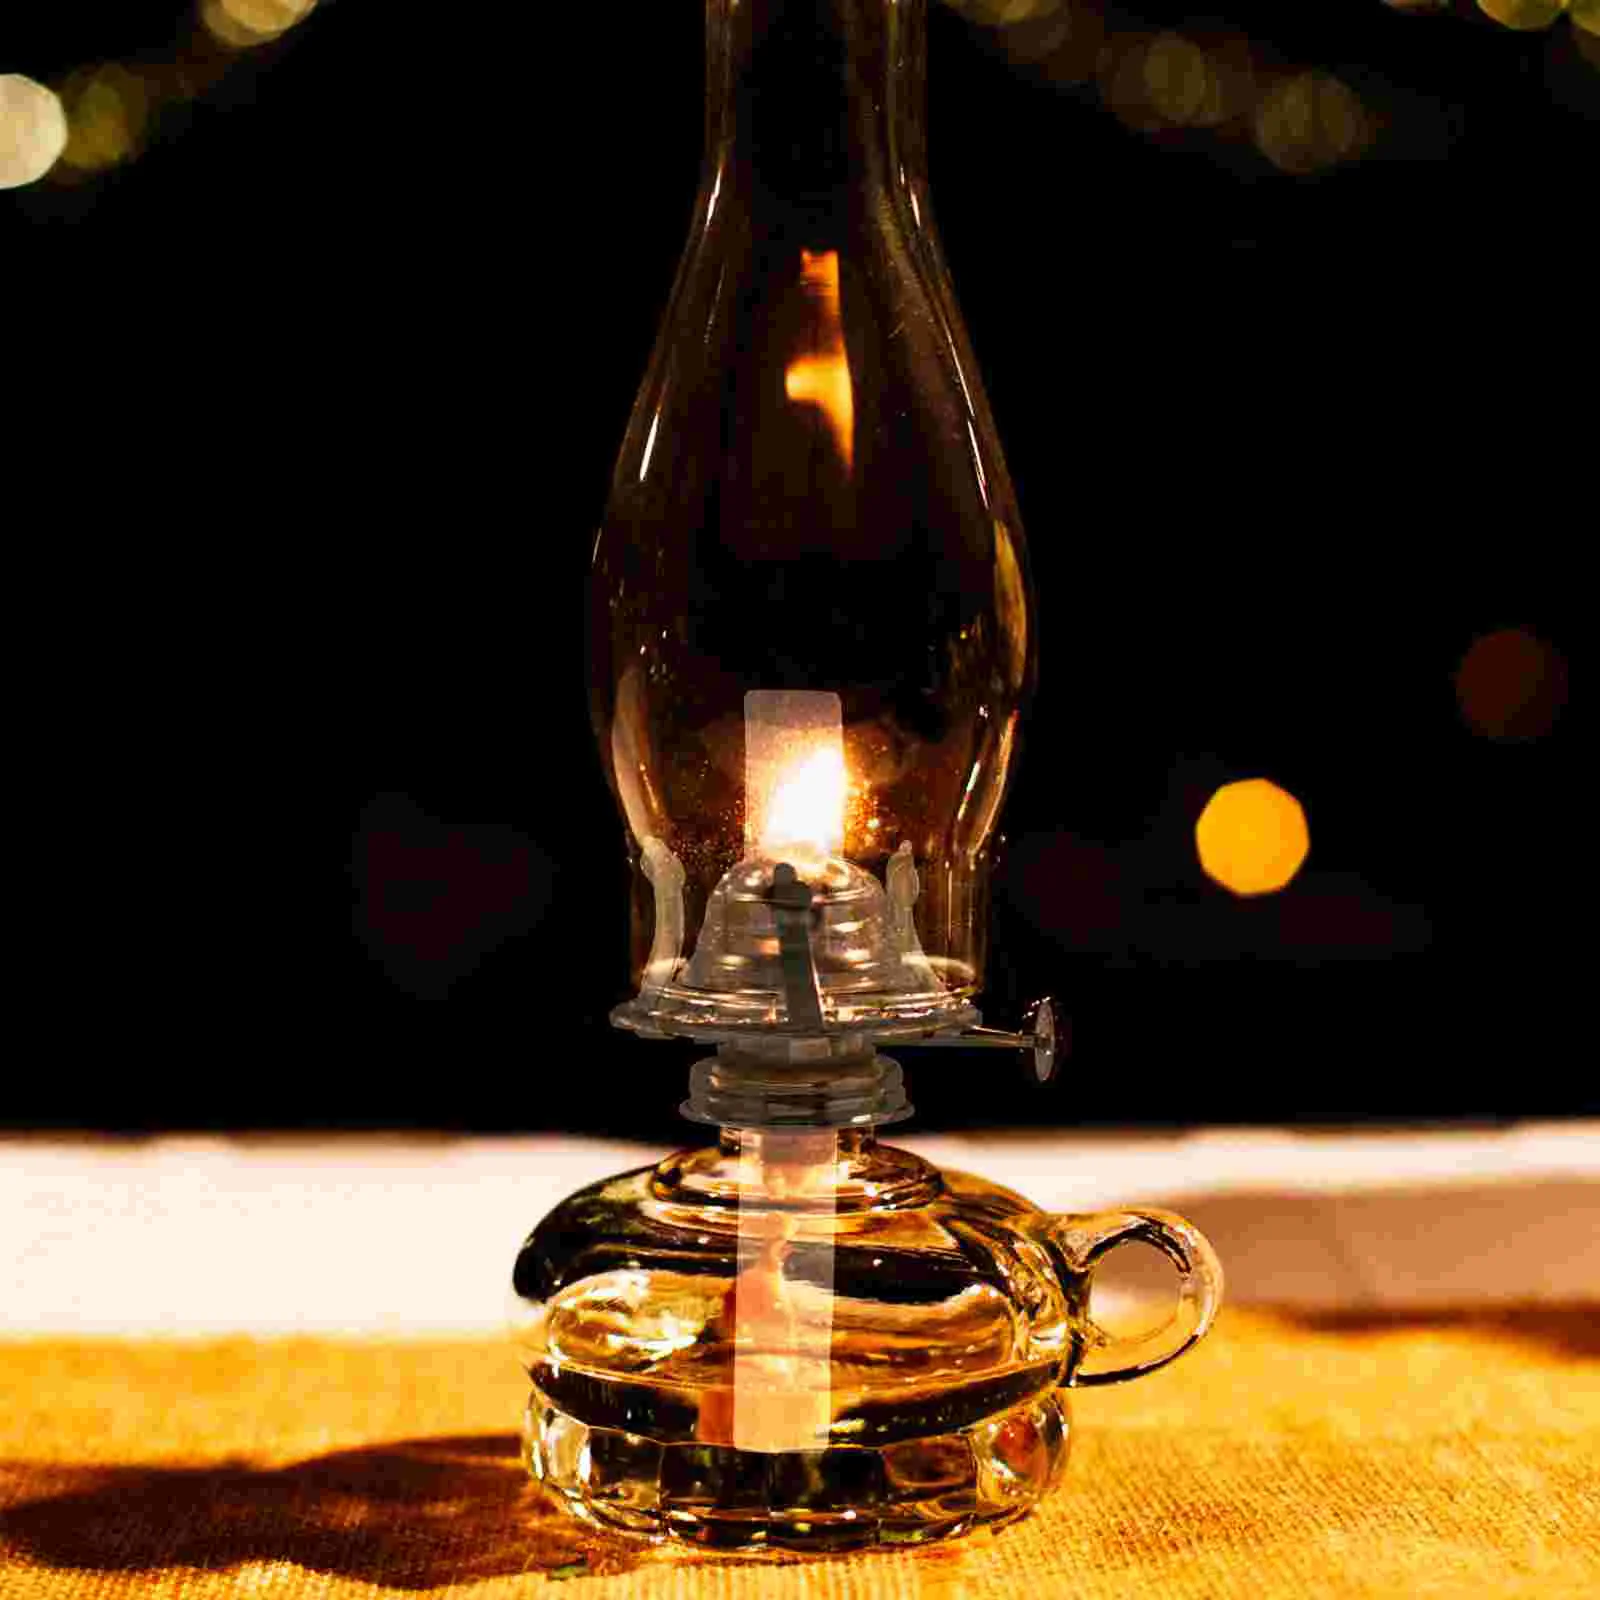 

Лампа масляная горелка керосиновый фитиль запасные части аксессуар держатель лампы стекловолокно для использования в помещении абажур св...